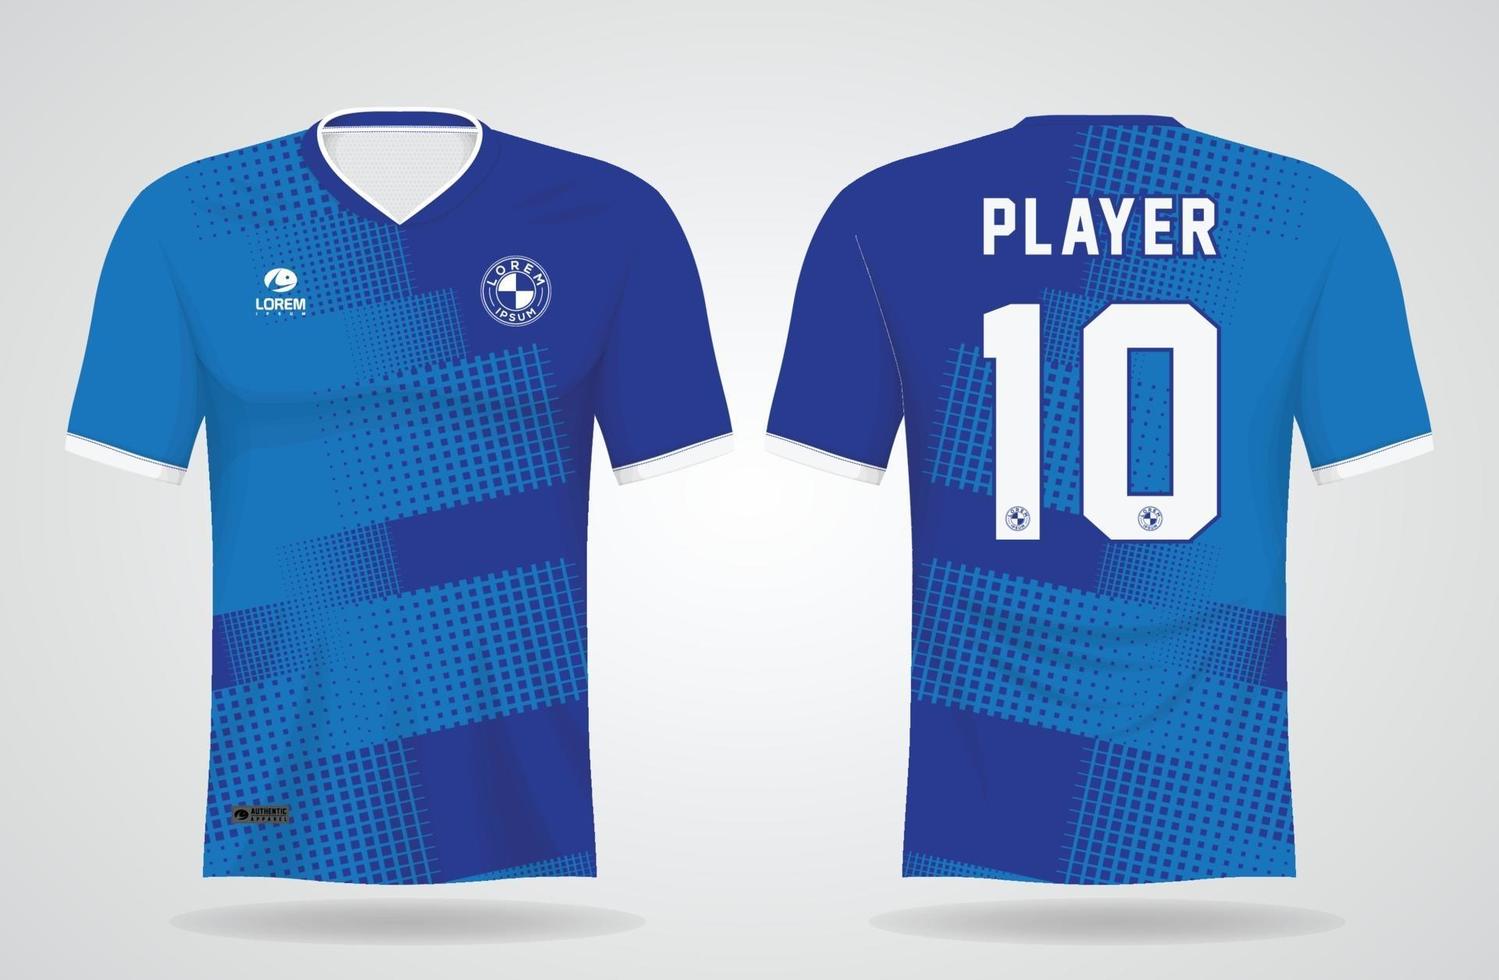 plantilla de camiseta deportiva azul para uniformes de equipo y diseño de camiseta de fútbol vector